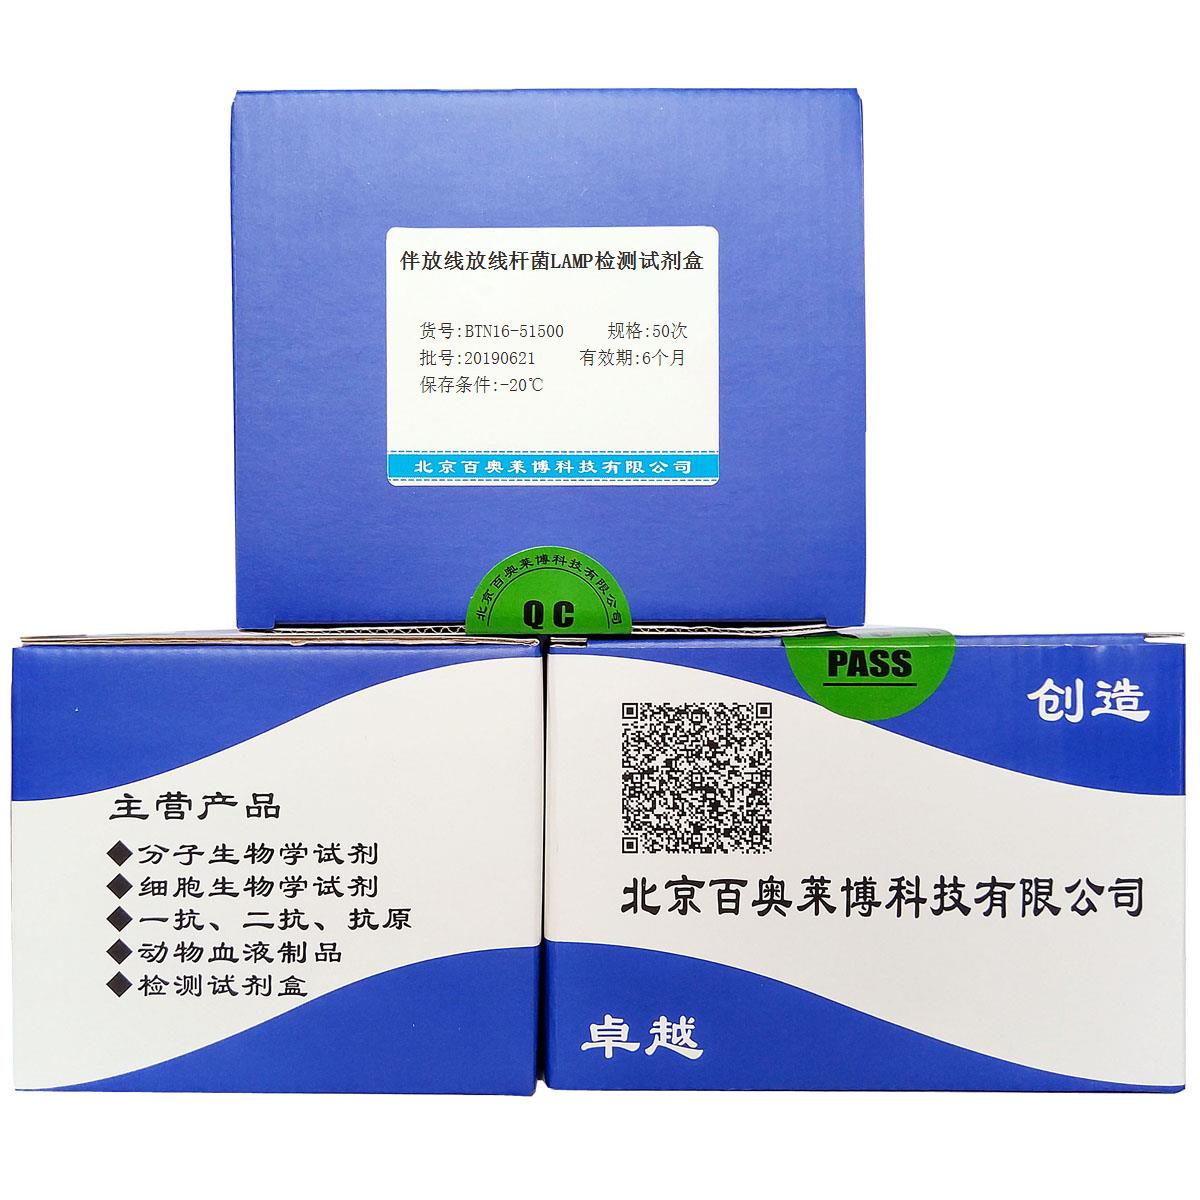 伴放线放线杆菌LAMP检测试剂盒北京价格